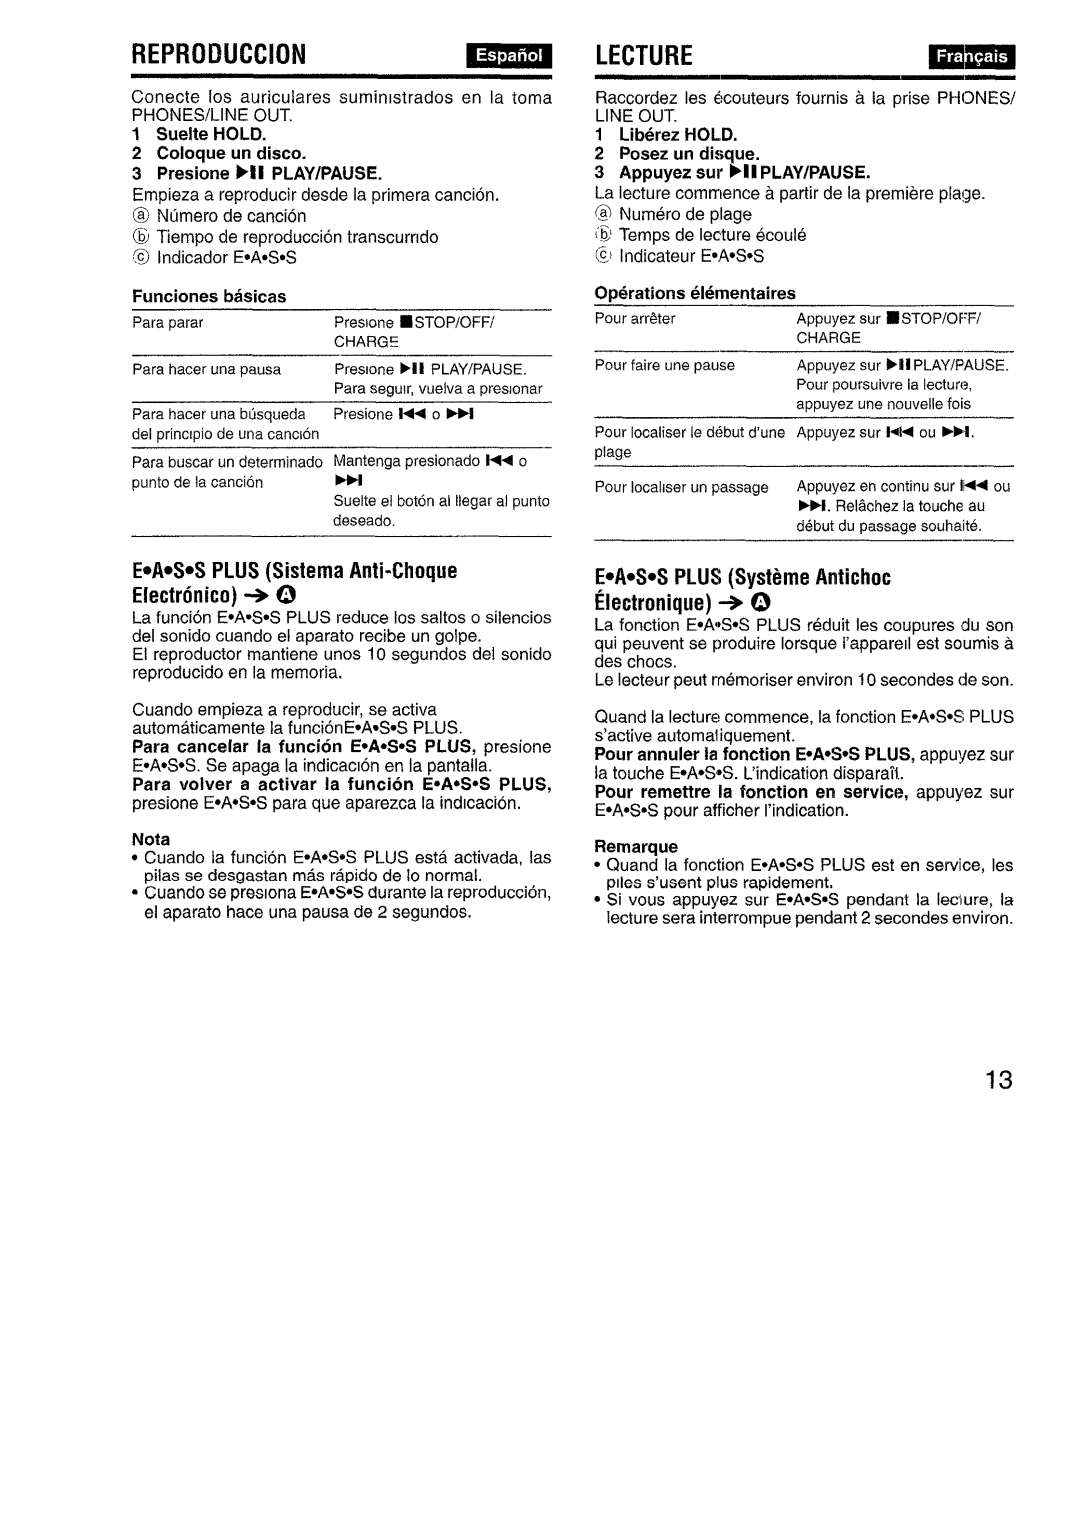 Aiwa XP-R970 manual Reproiiuccion, Lecture, E.A.S.S PLUS Sistema Anti-Choque Electronic + @ 